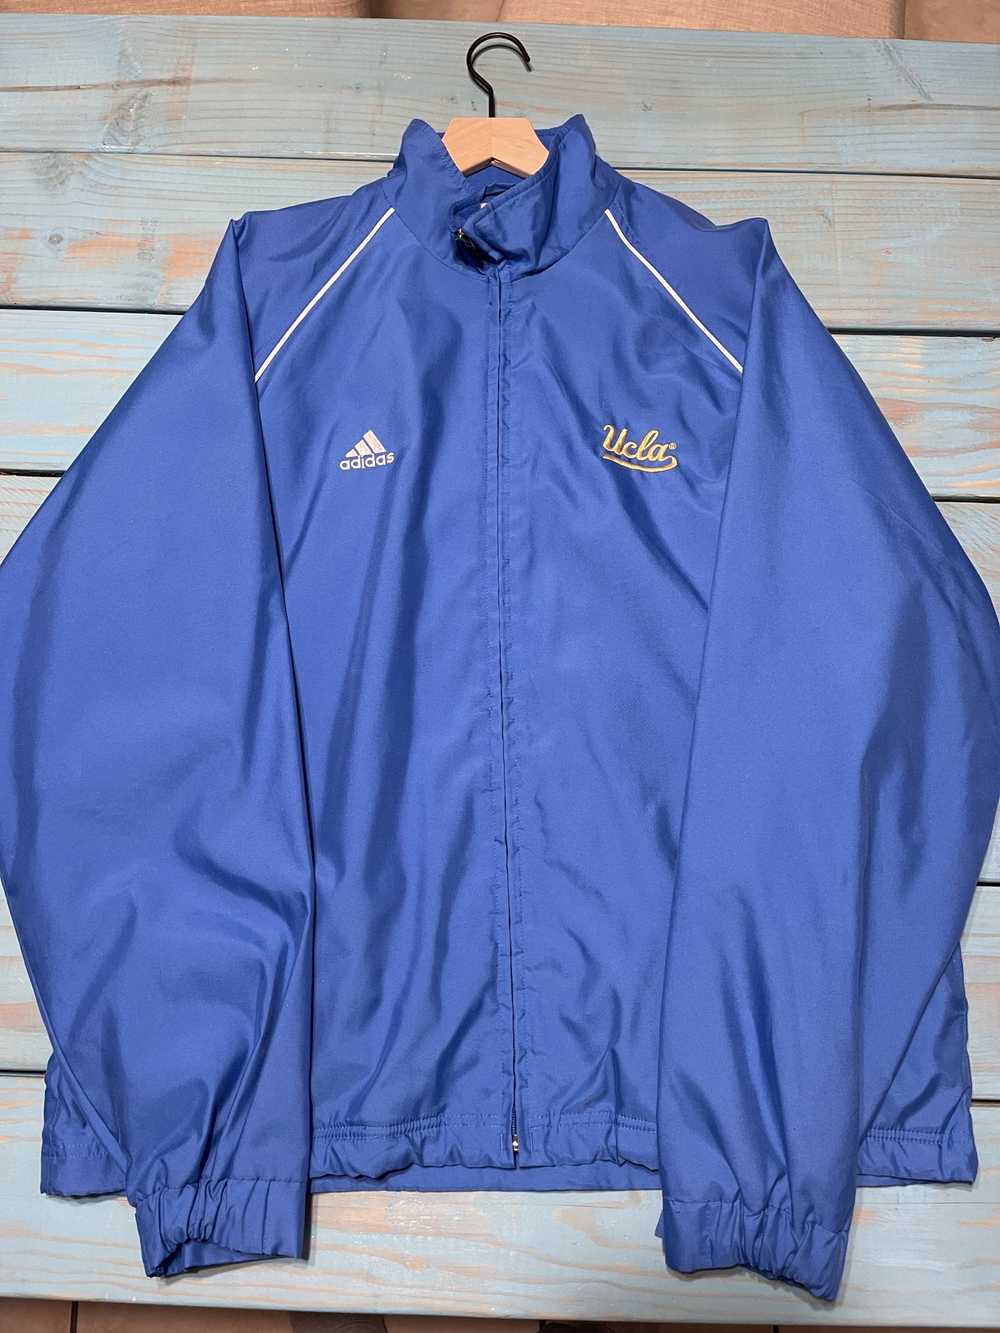 Adidas Adidas UCLA Jacket - image 1